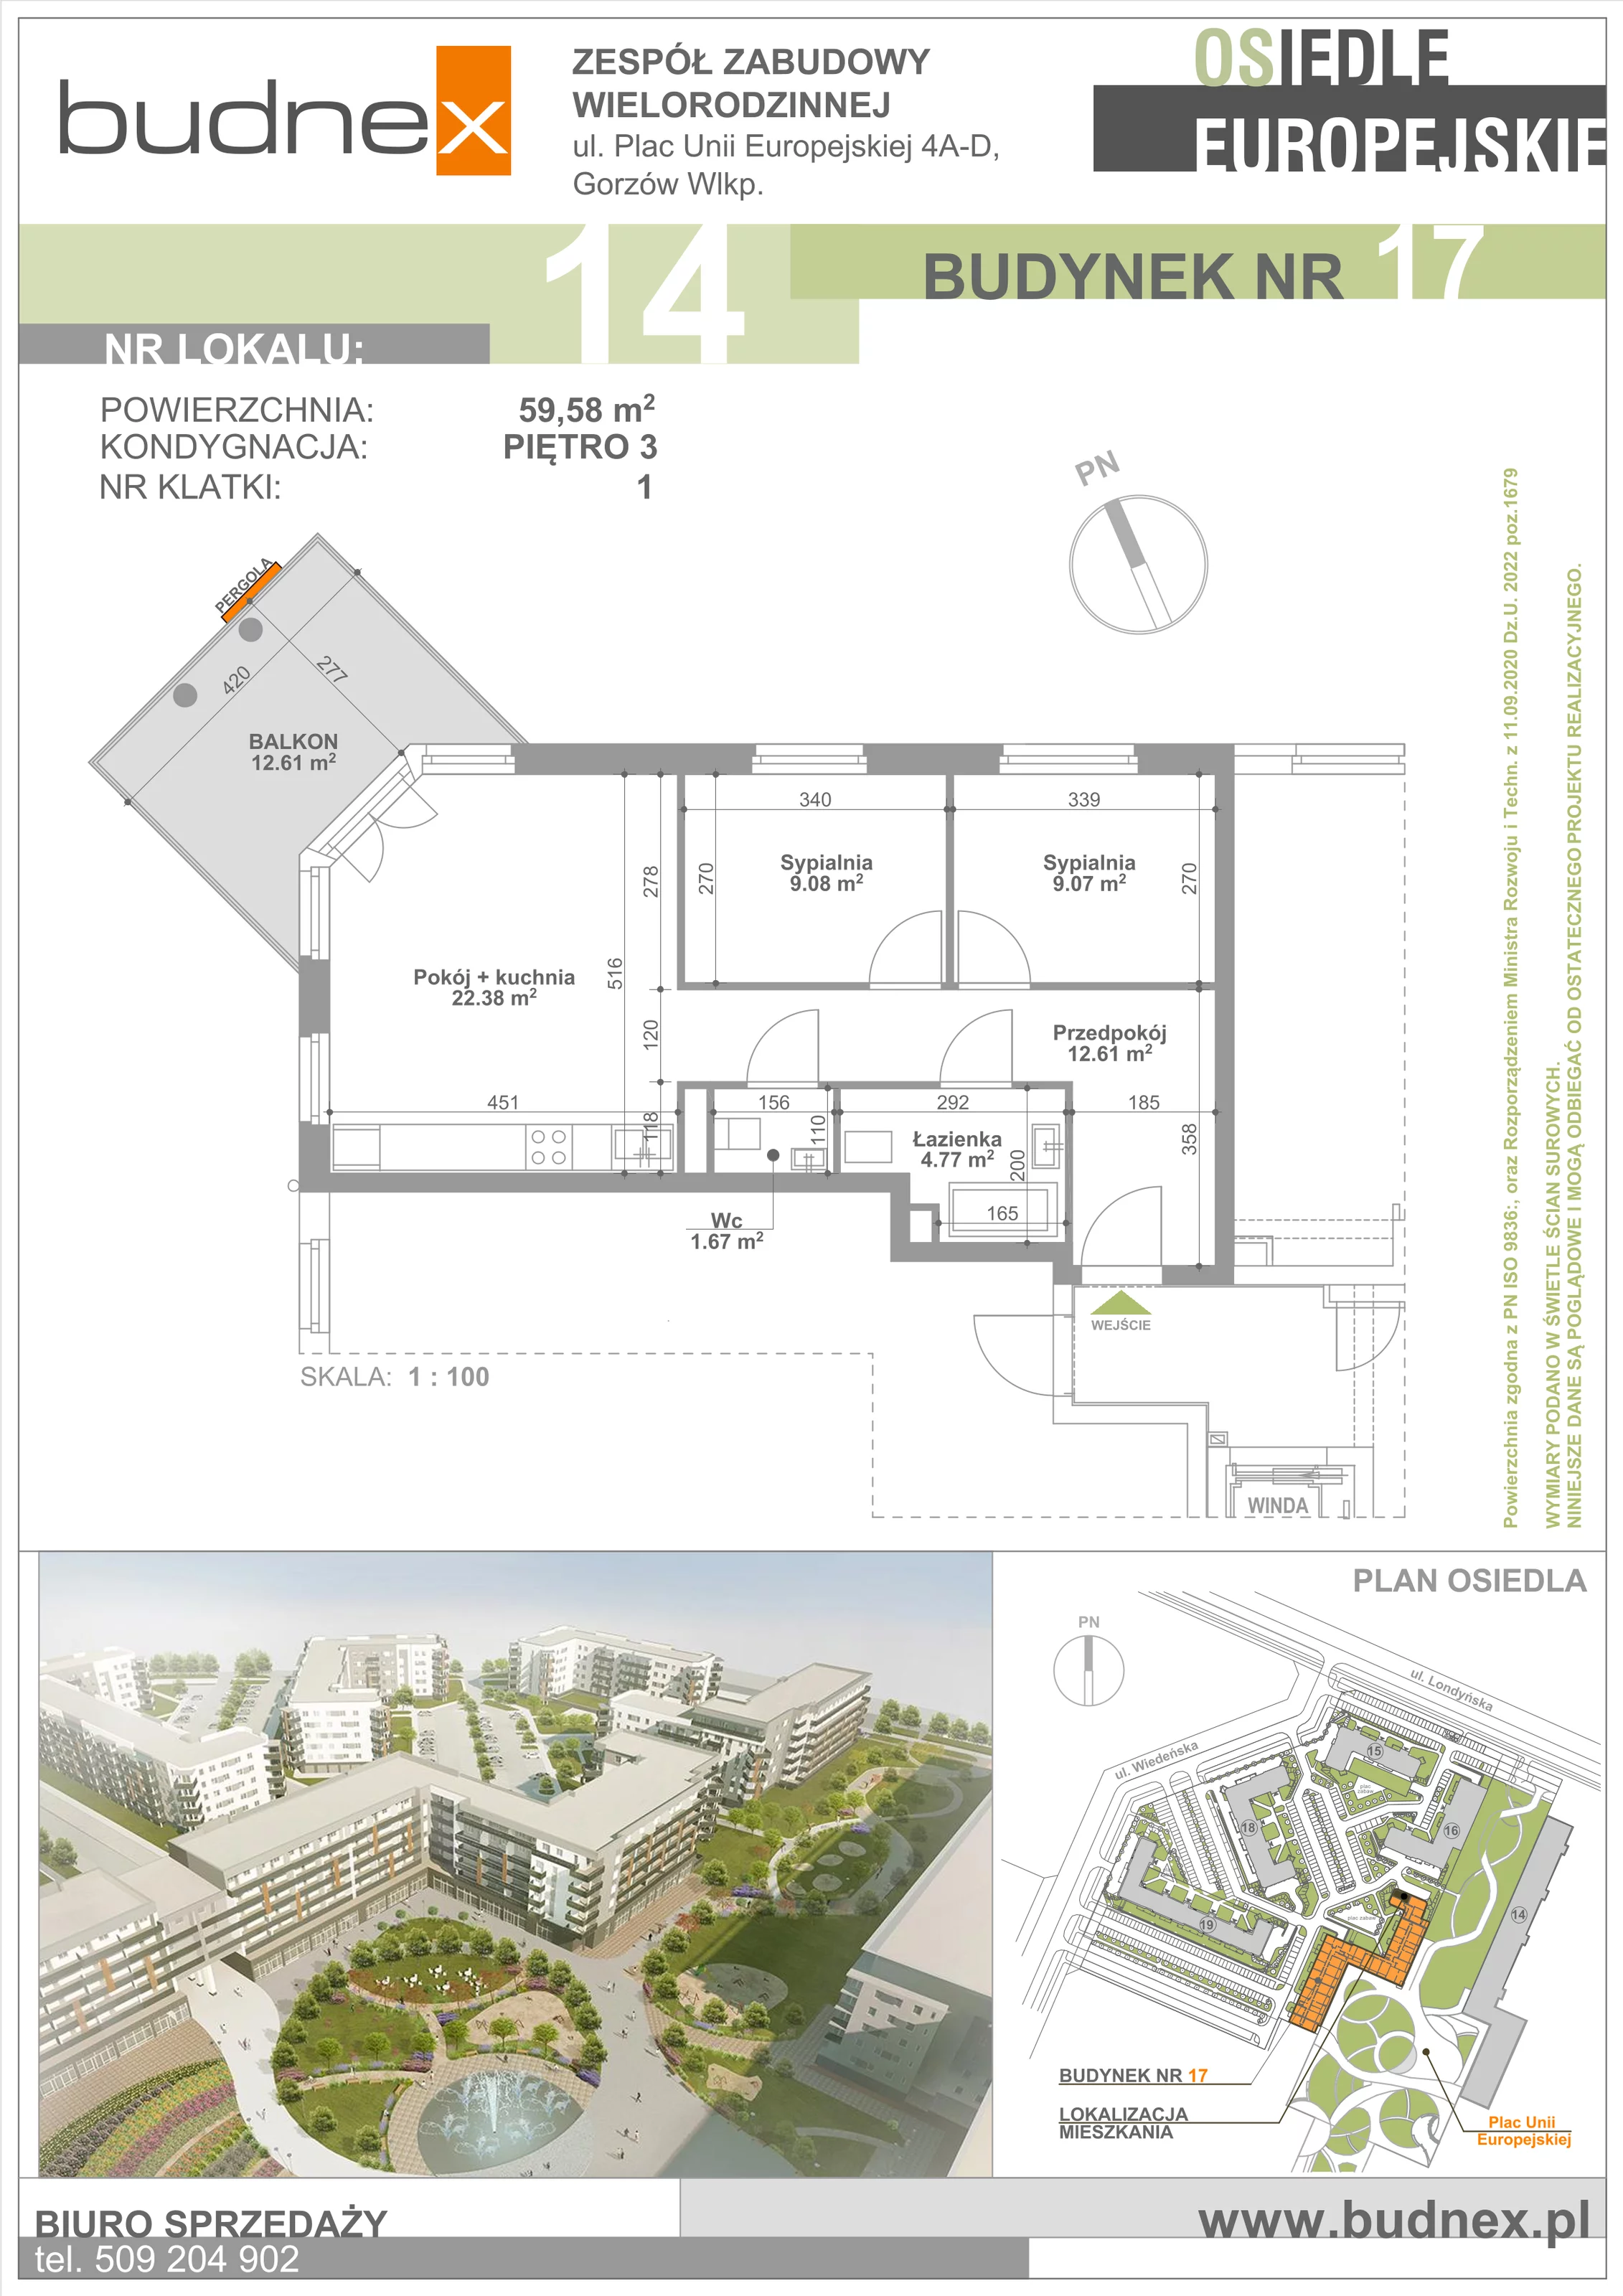 Mieszkanie 59,58 m², piętro 3, oferta nr 1/M14, Osiedle Europejskie - Budynek 17, Gorzów Wielkopolski, Plac Unii Europejskiej 4A-D